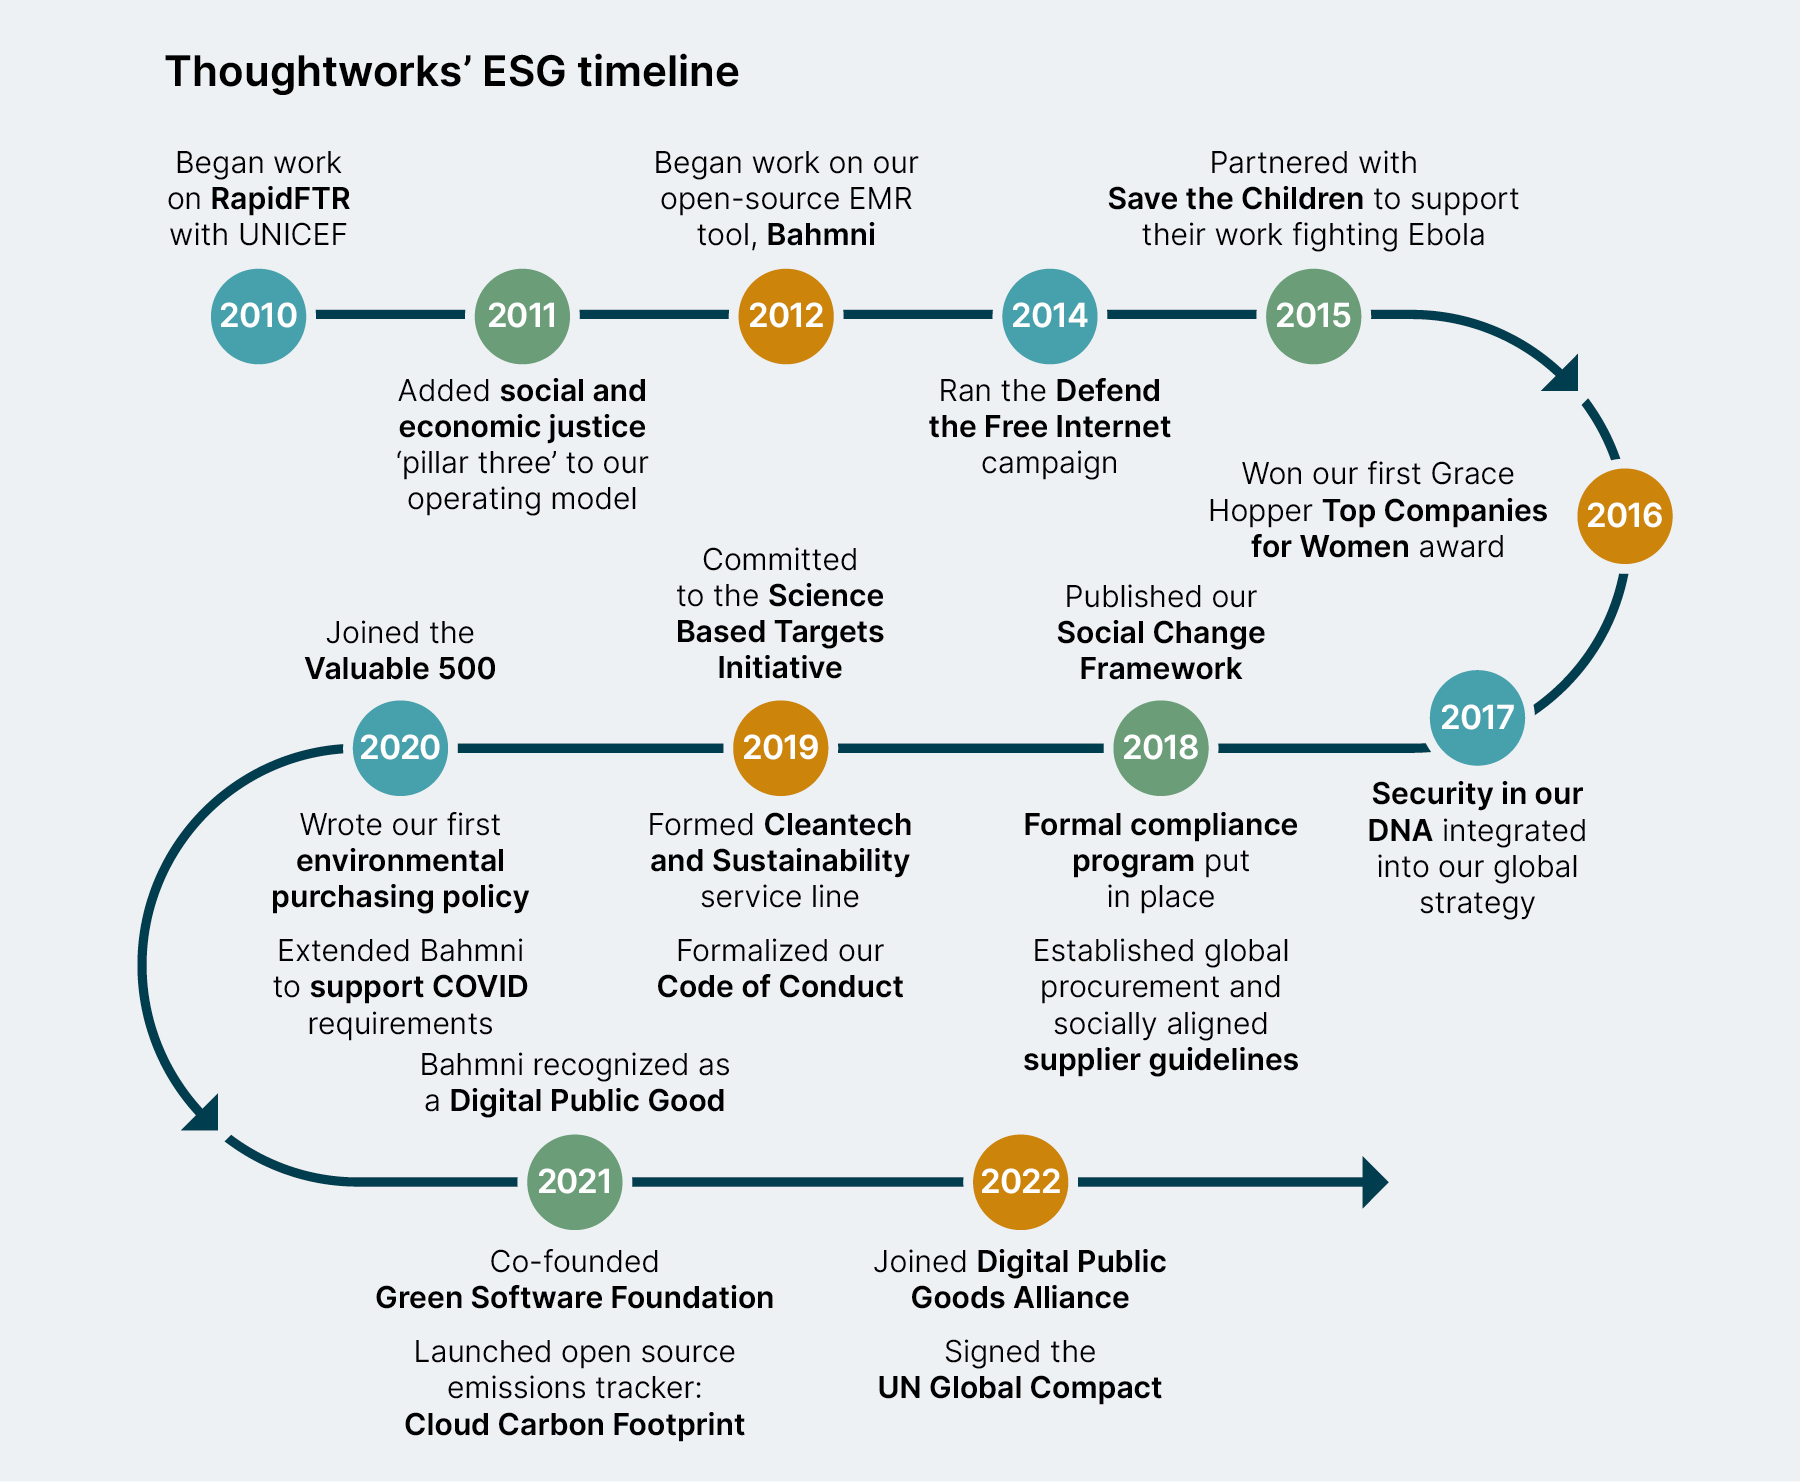 Zeitleiste der Errungenschaften und Meilensteine von Thoughtworks ESG von 2010 bis 2022, mit der Arbeit an Bahmni von 2012 bis heute und anderen Beispielen (Englisch).